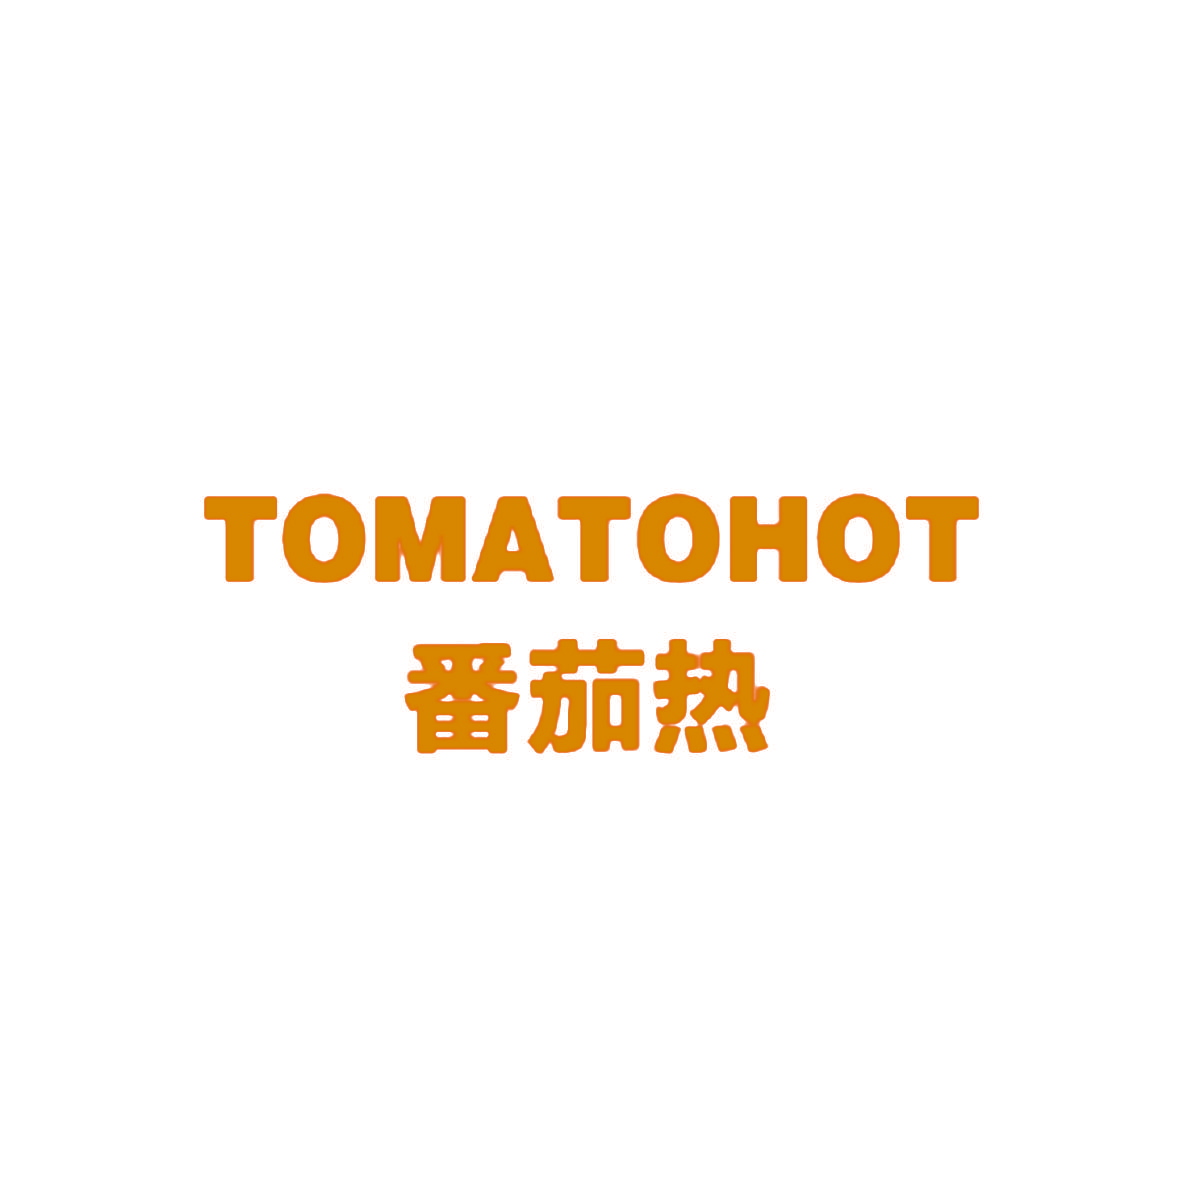 番茄热 TOMATOHOT